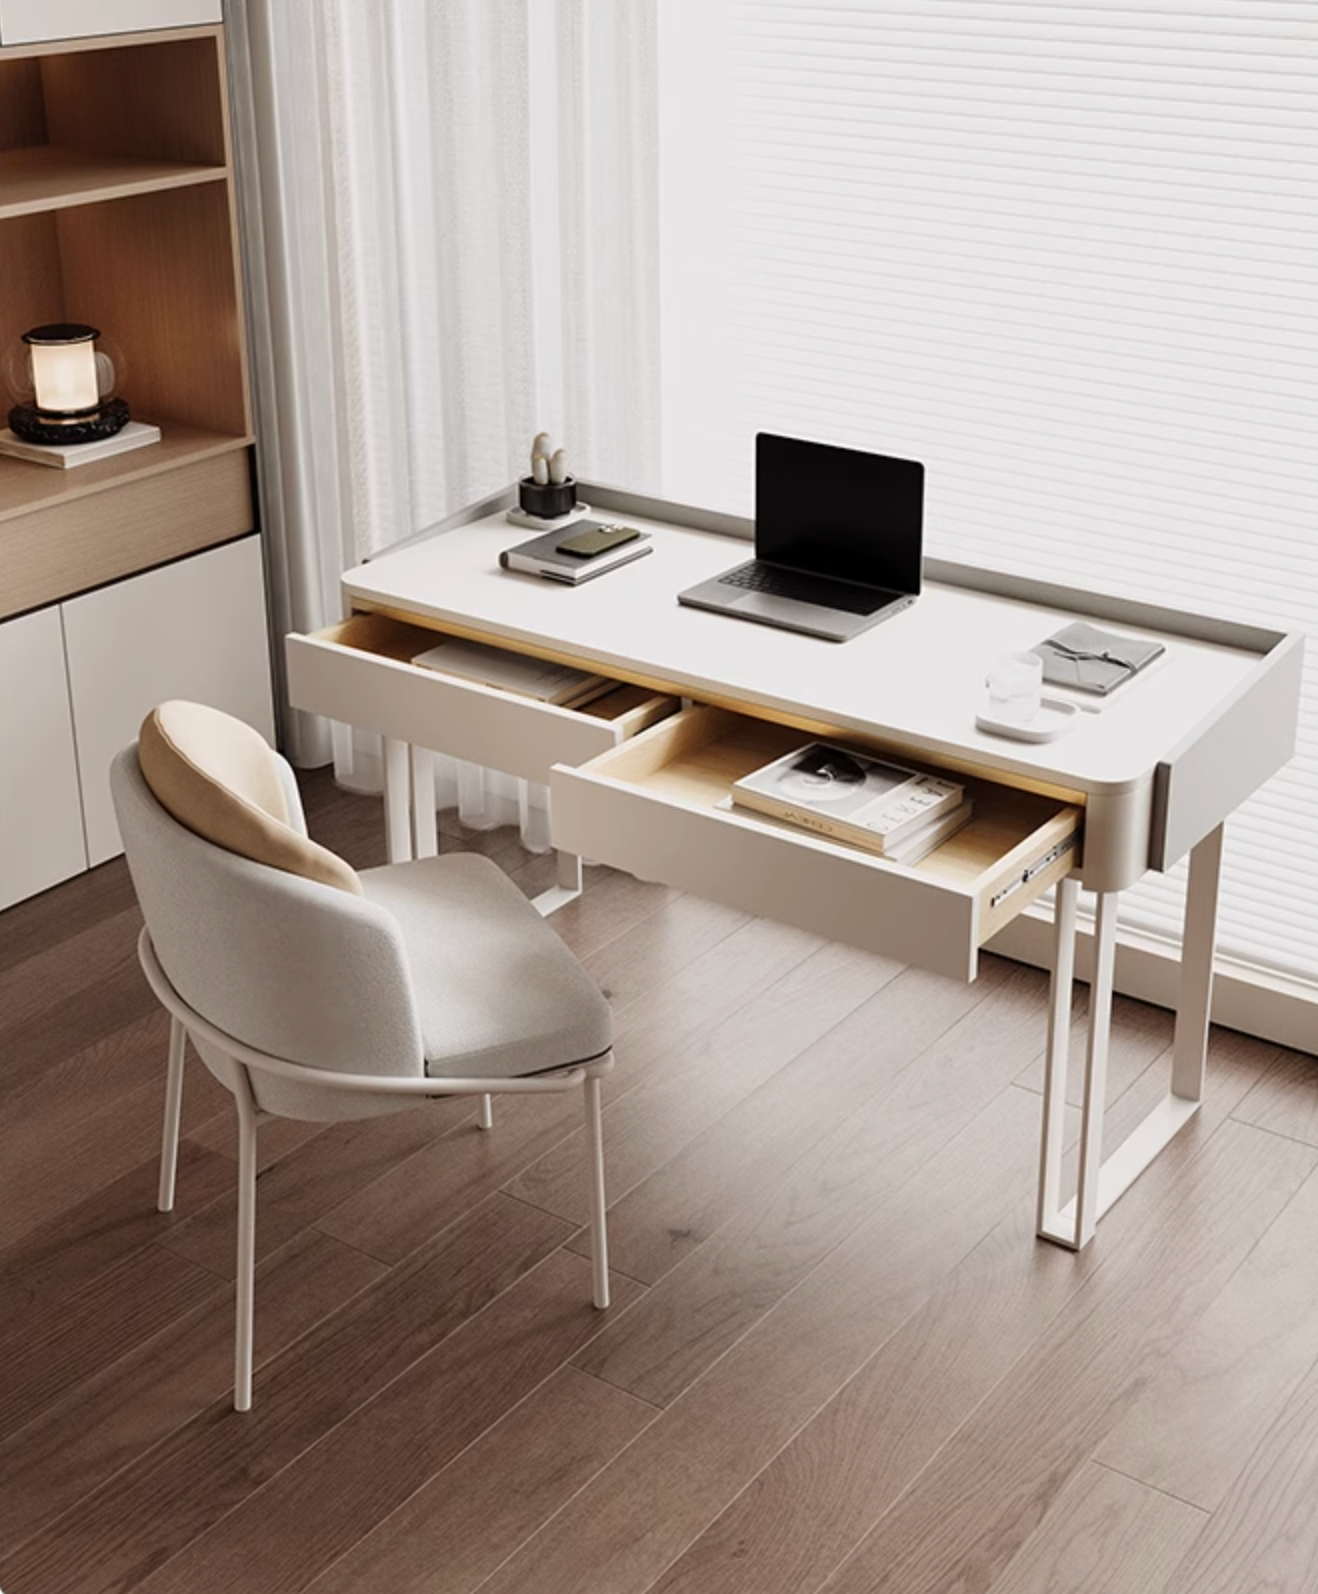 Otto Office Desk - White Sintered Stone｜ DC Concept